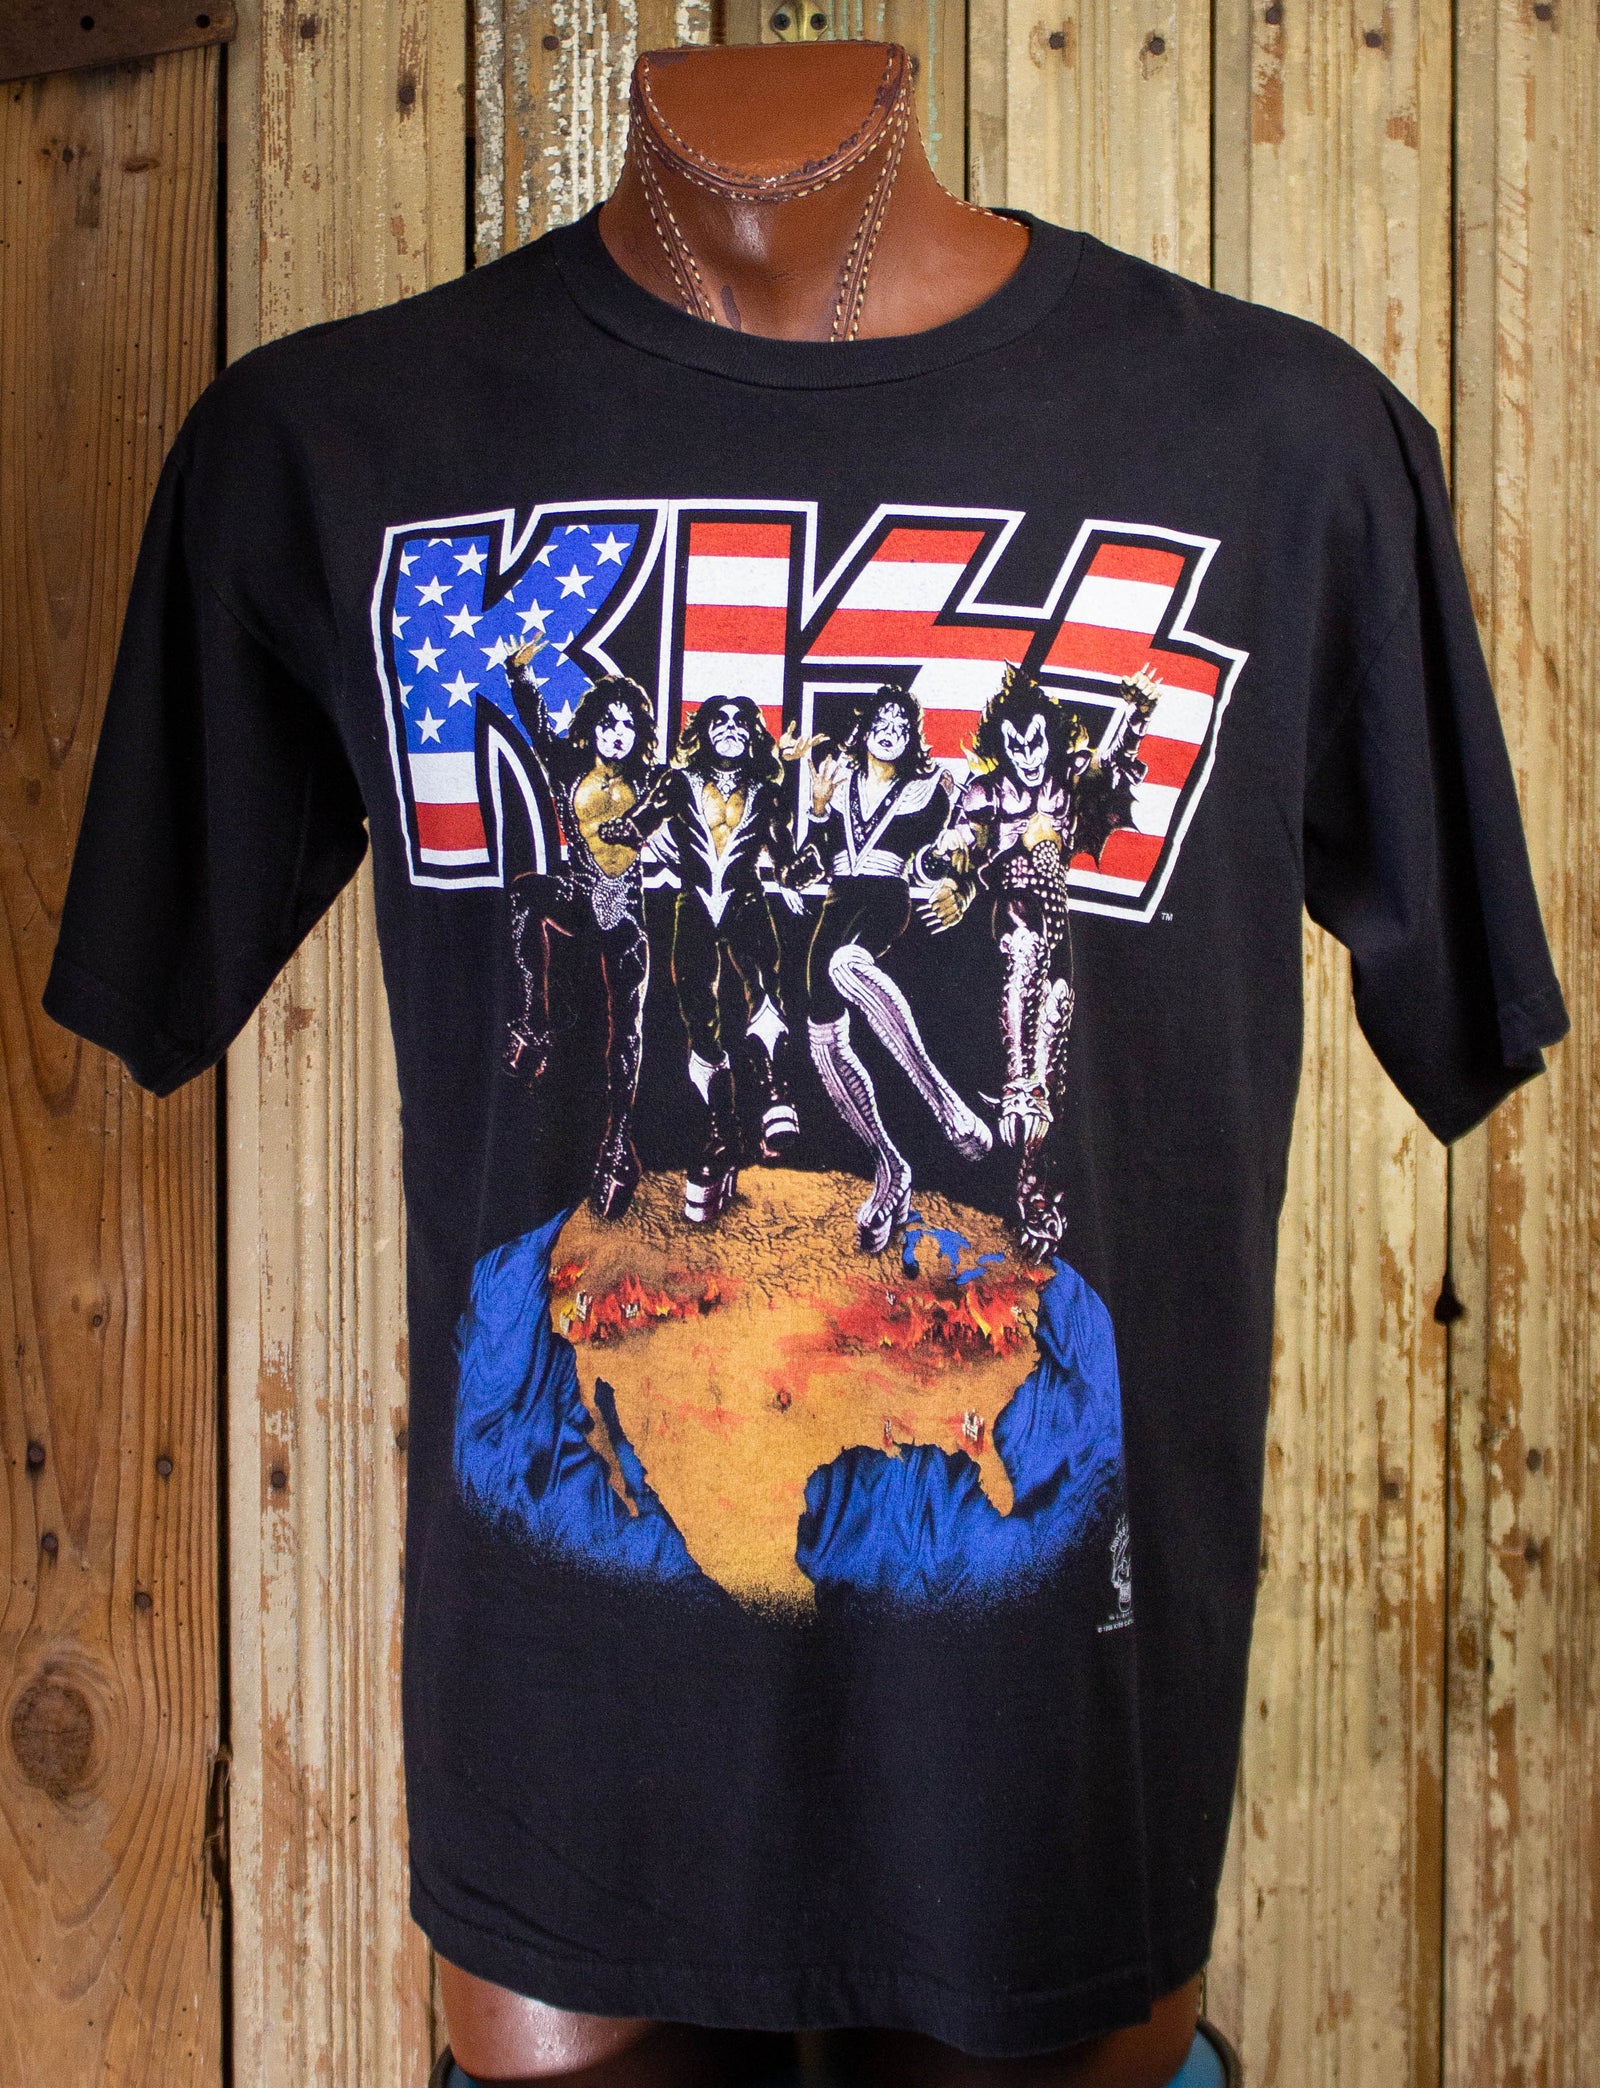 Kiss Band Shirt, Vintage Kiss Tee